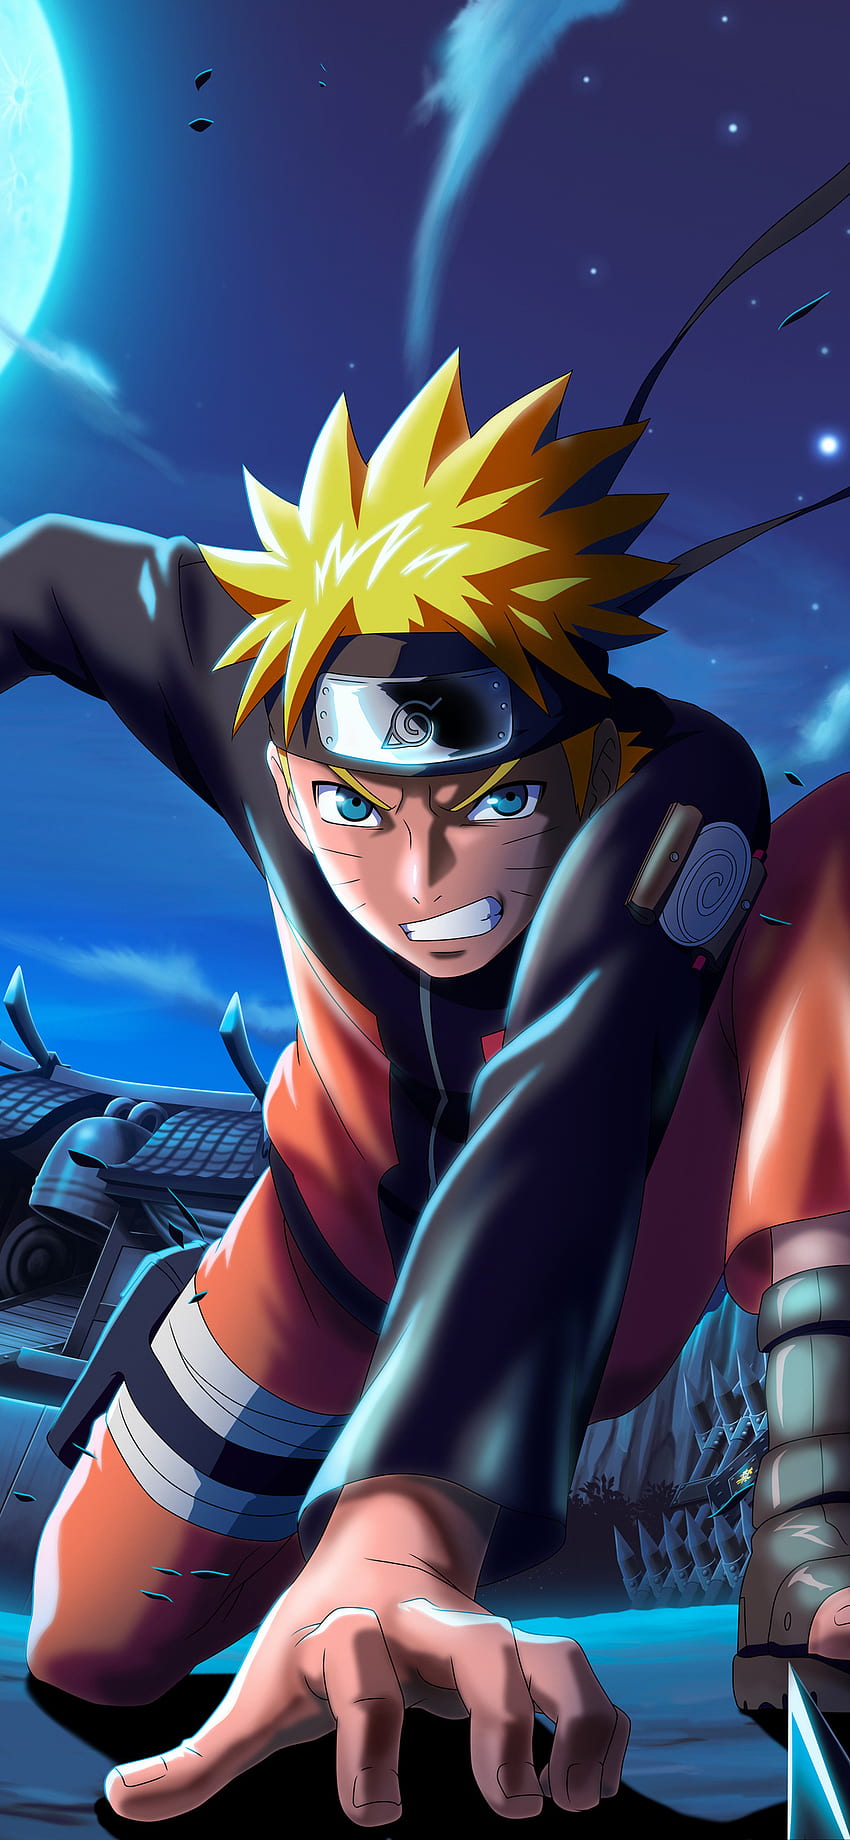 Naruto X Boruto Ninja Voltage trở thành một trong những tựa game được yêu thích nhất trên iPhone XS MAX. Với những hình nền Naruto X Boruto Ninja Voltage iPhone XS MAX rực rỡ, cùng với một trận chiến ác liệt được tạo nên trên màn hình. Hãy khám phá những hình nền độc đáo này để đem tinh thần Naruto vào chiếc điện thoại của bạn.